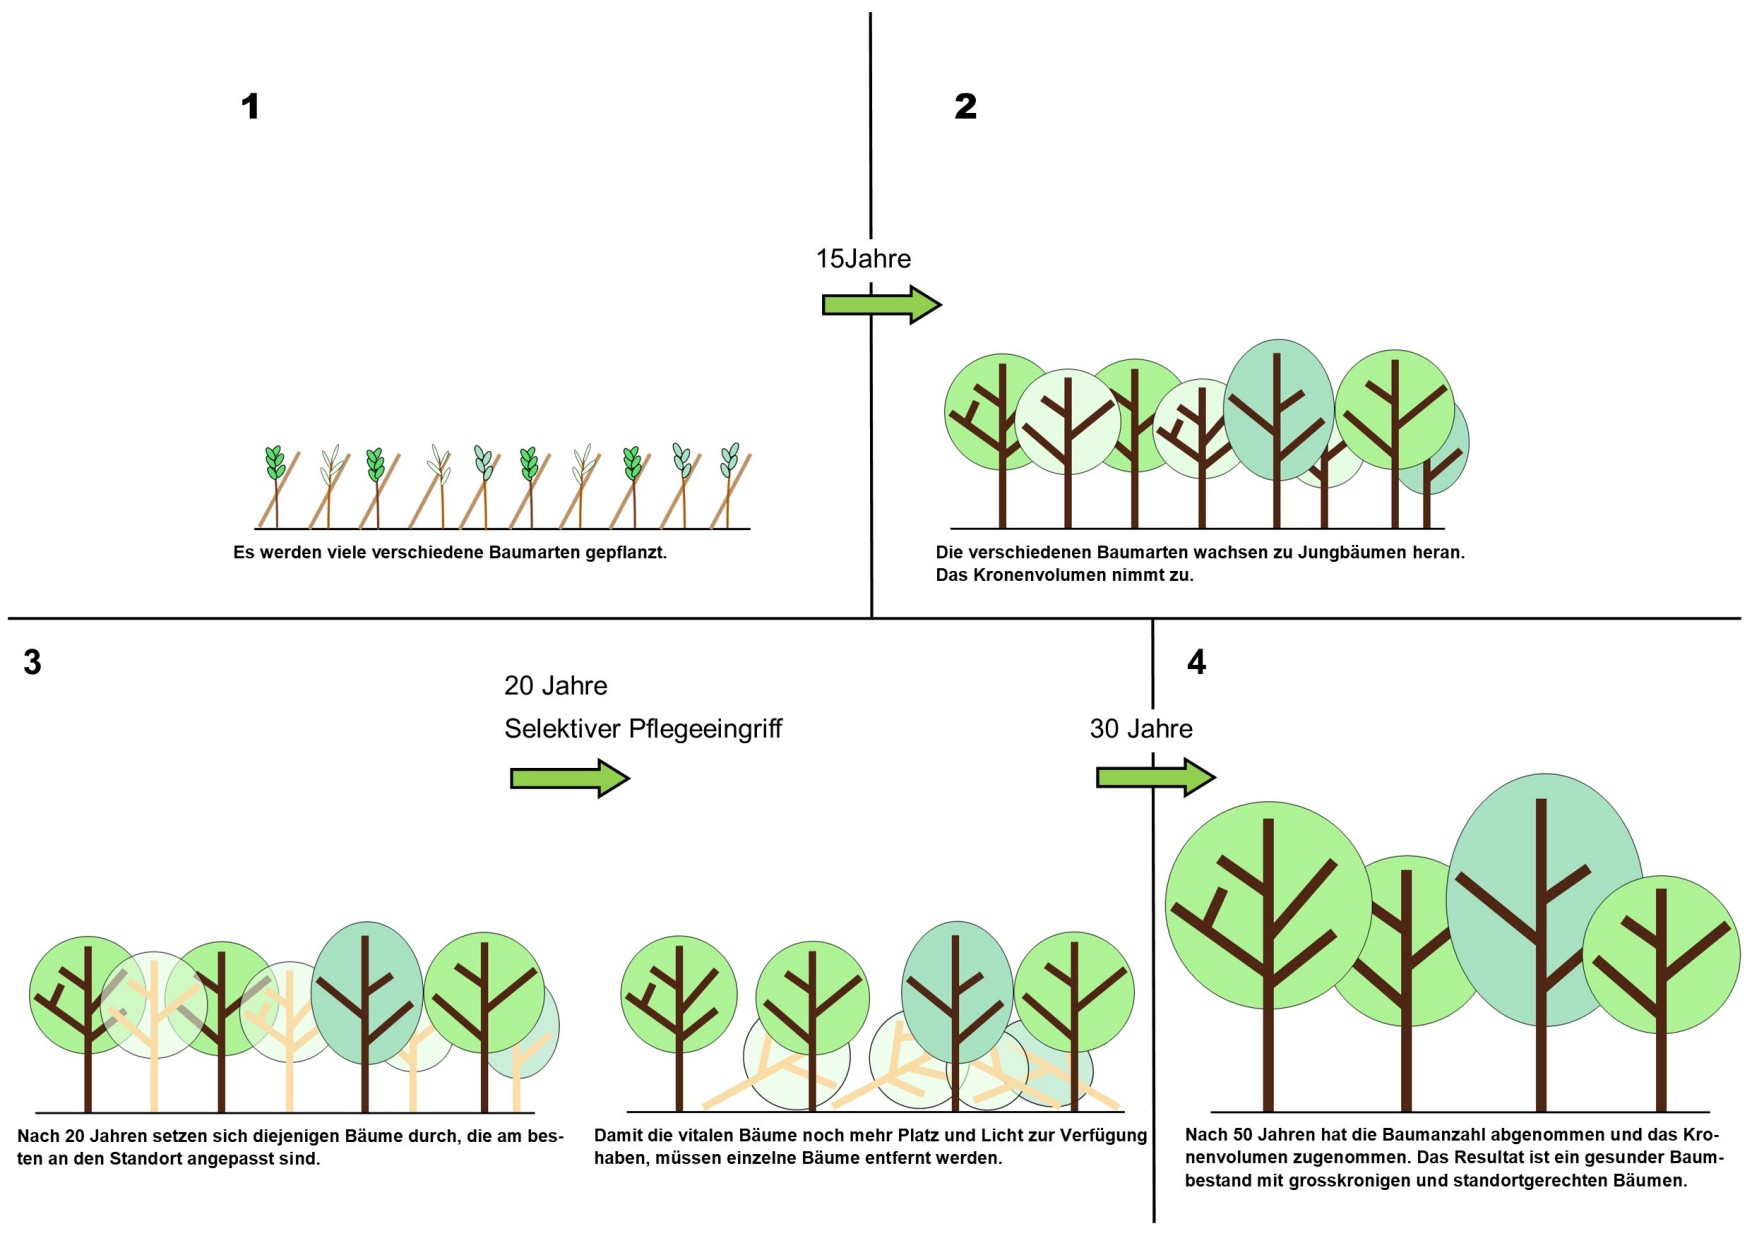 Illustration der Baumbestandsentwicklung über die nächsten 30 Jahren.